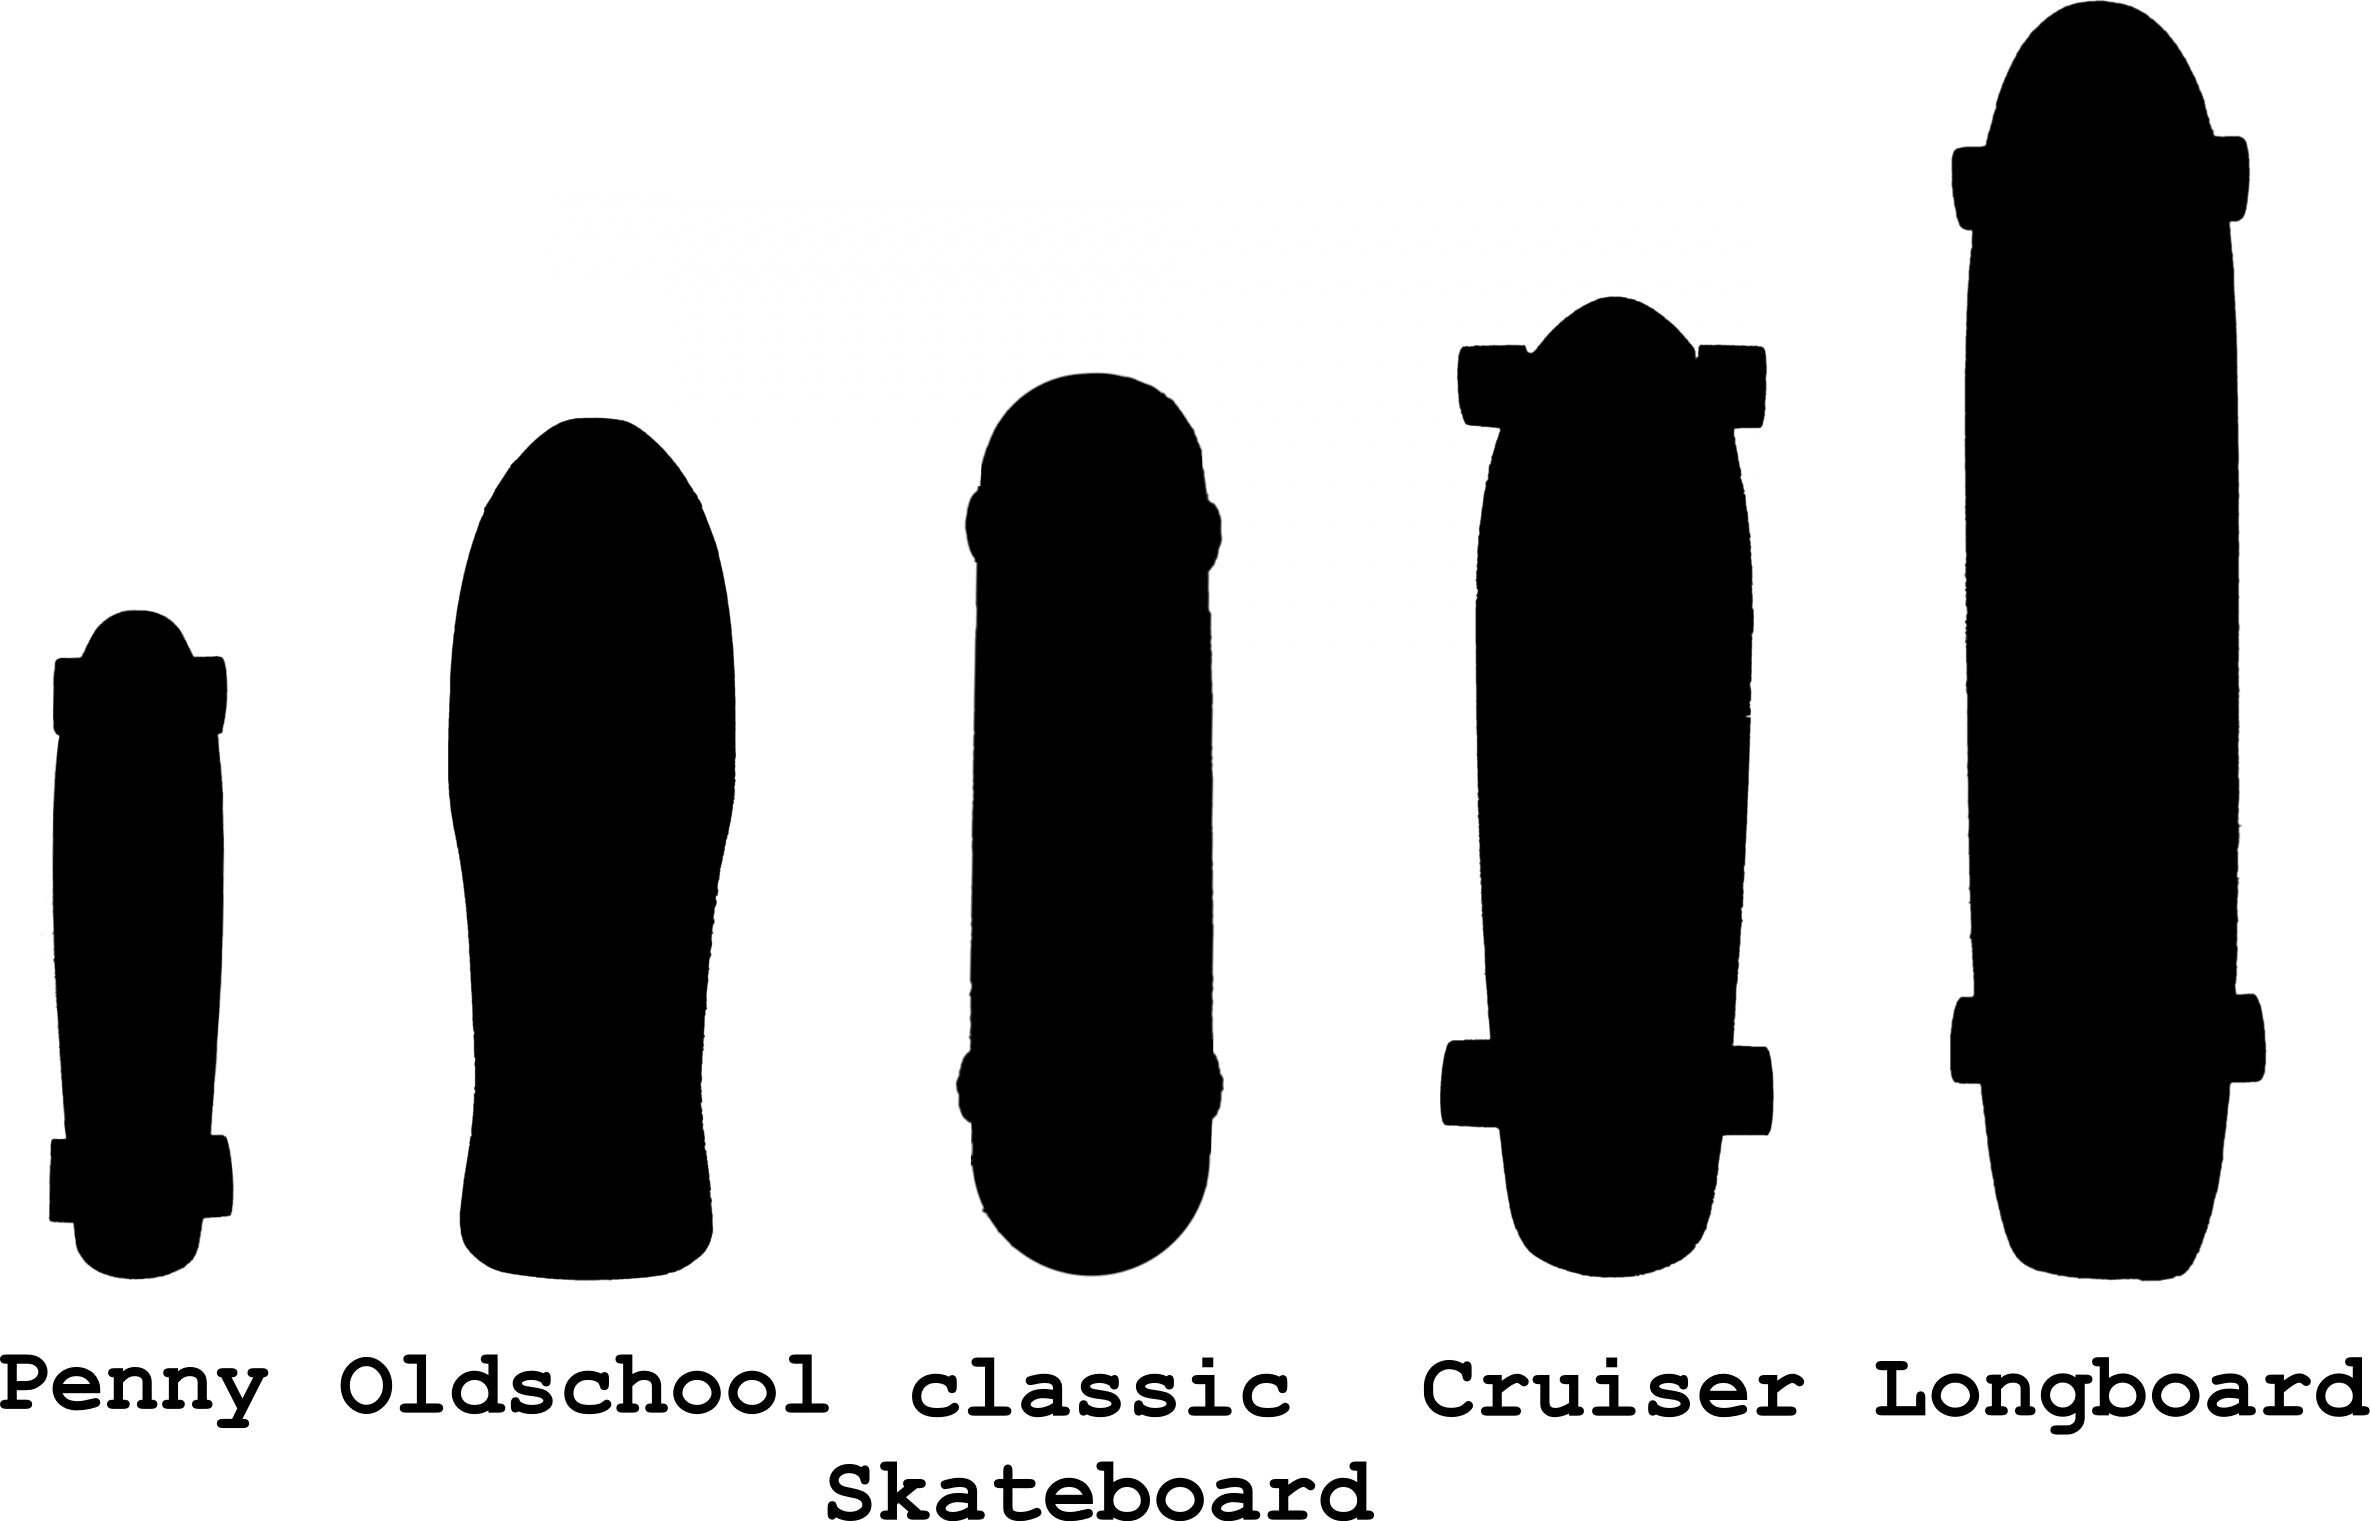 佩妮、老式滑板、古典滑板、巡洋舰和长板的比较